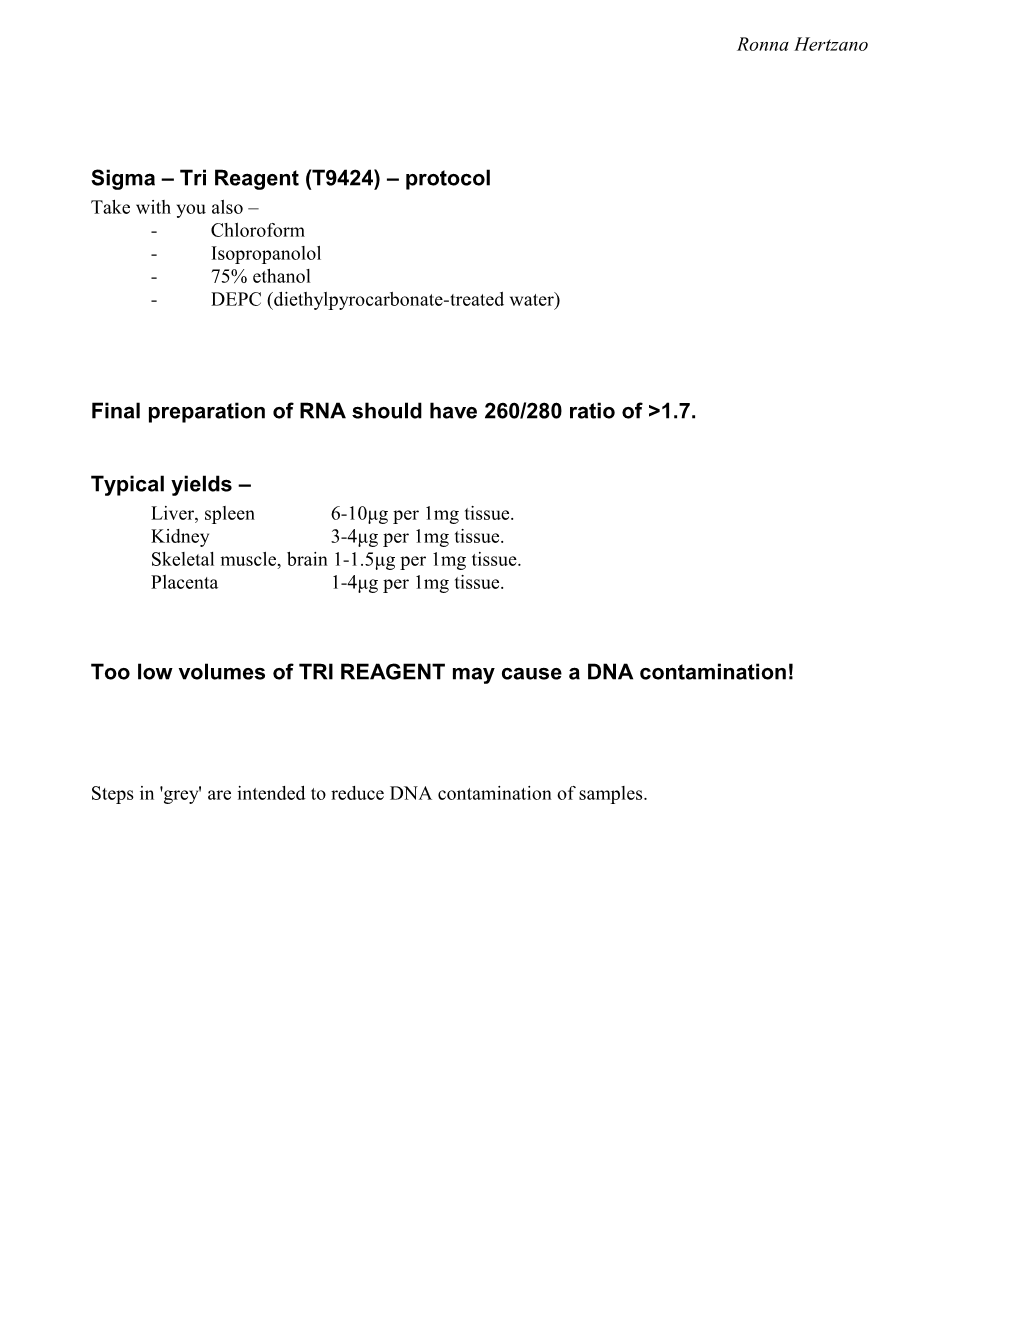 Sigma Tri Reagent (T9424) Protocol